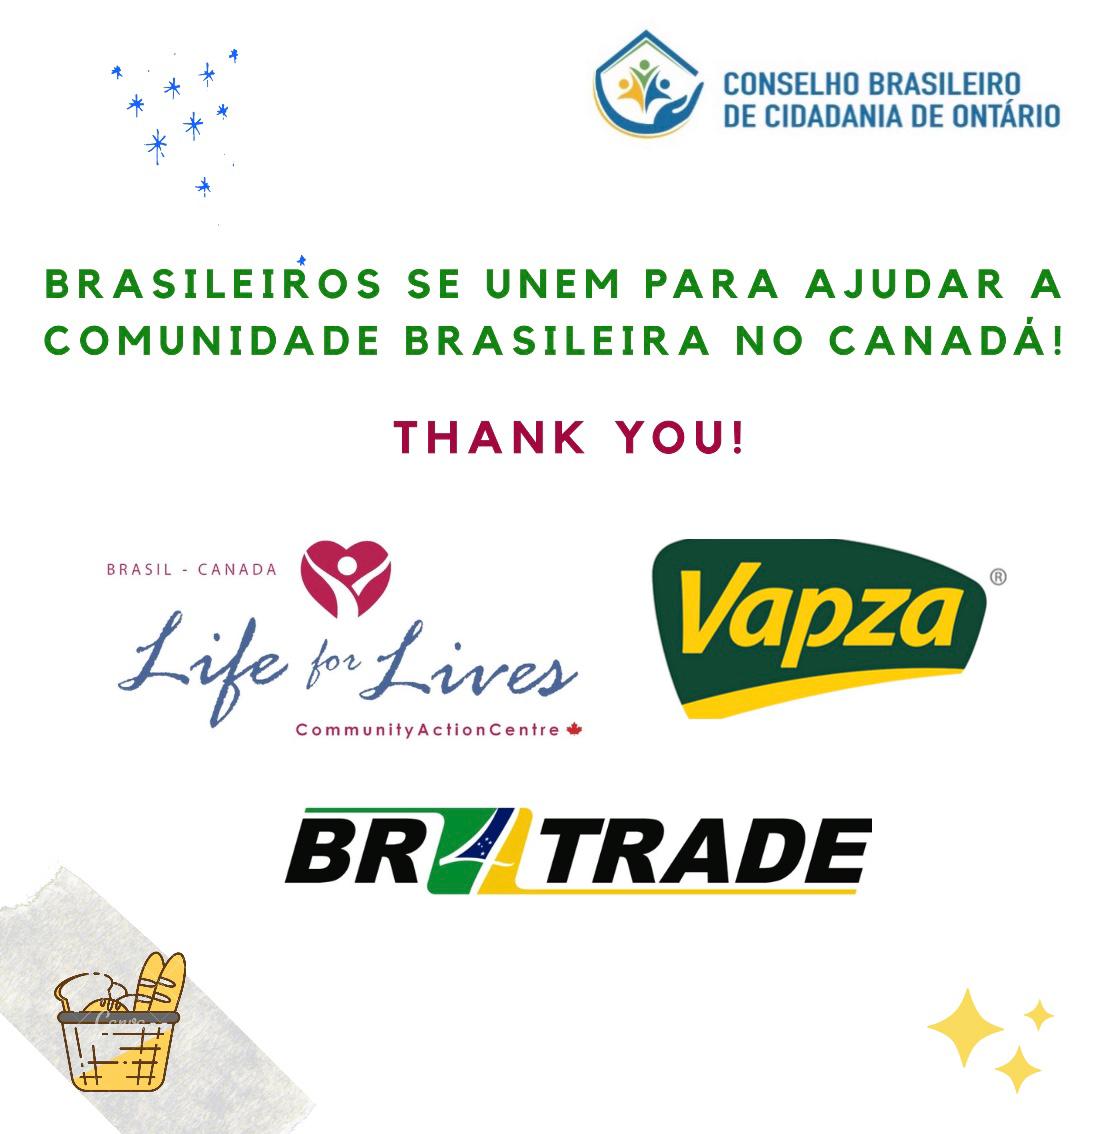 O Conselho Brasileiro de Cidadania de Ontário (CONCID) juntamente com as organizações Life for Lives, BR4 Trade e Vapza Alimentos unem forças em apoio aos brasileiros que se encontram no Canadá.